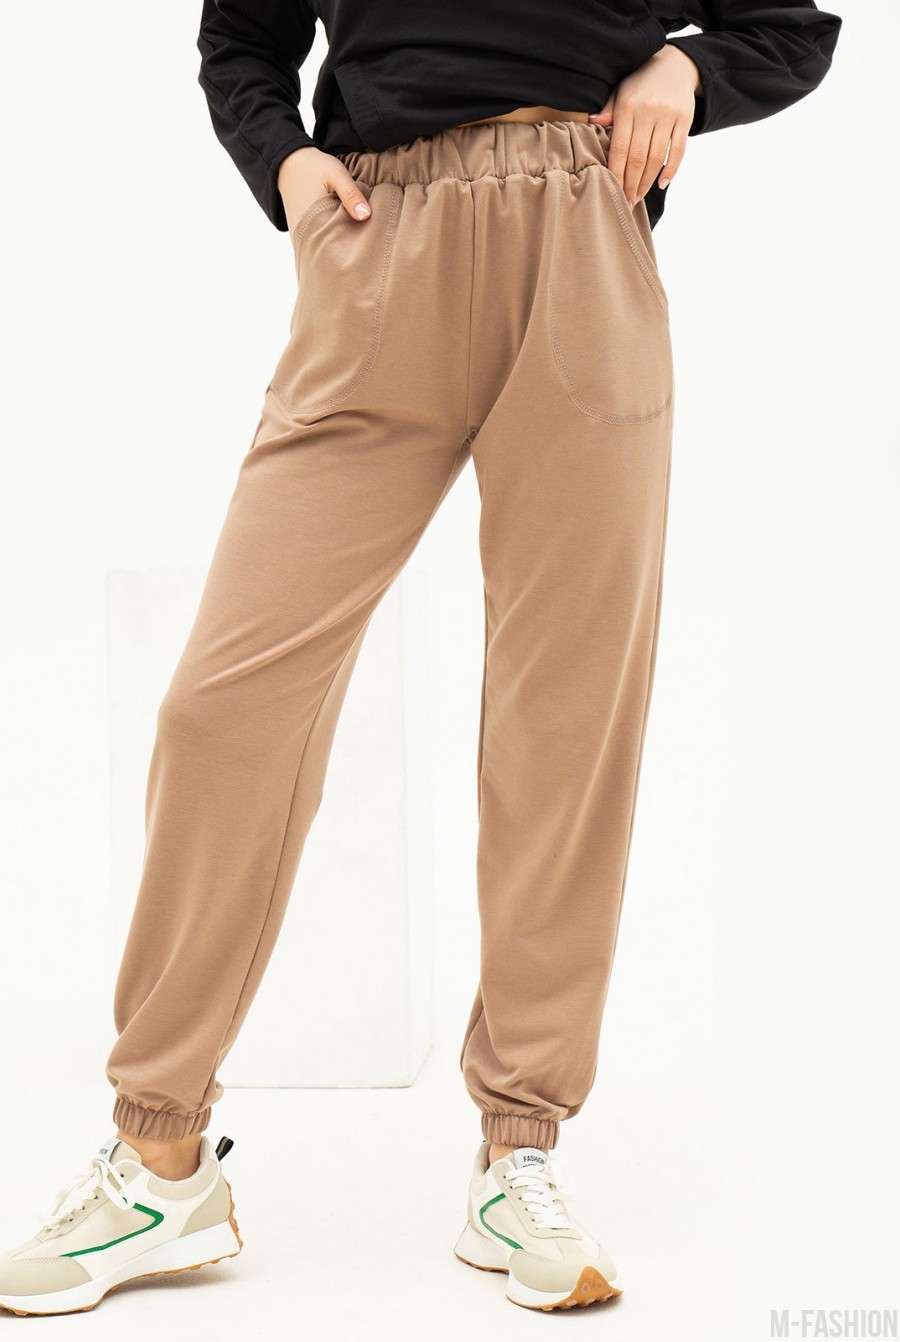 Бежевые трикотажные спортивные штаны модели джоггер  - Фото 1